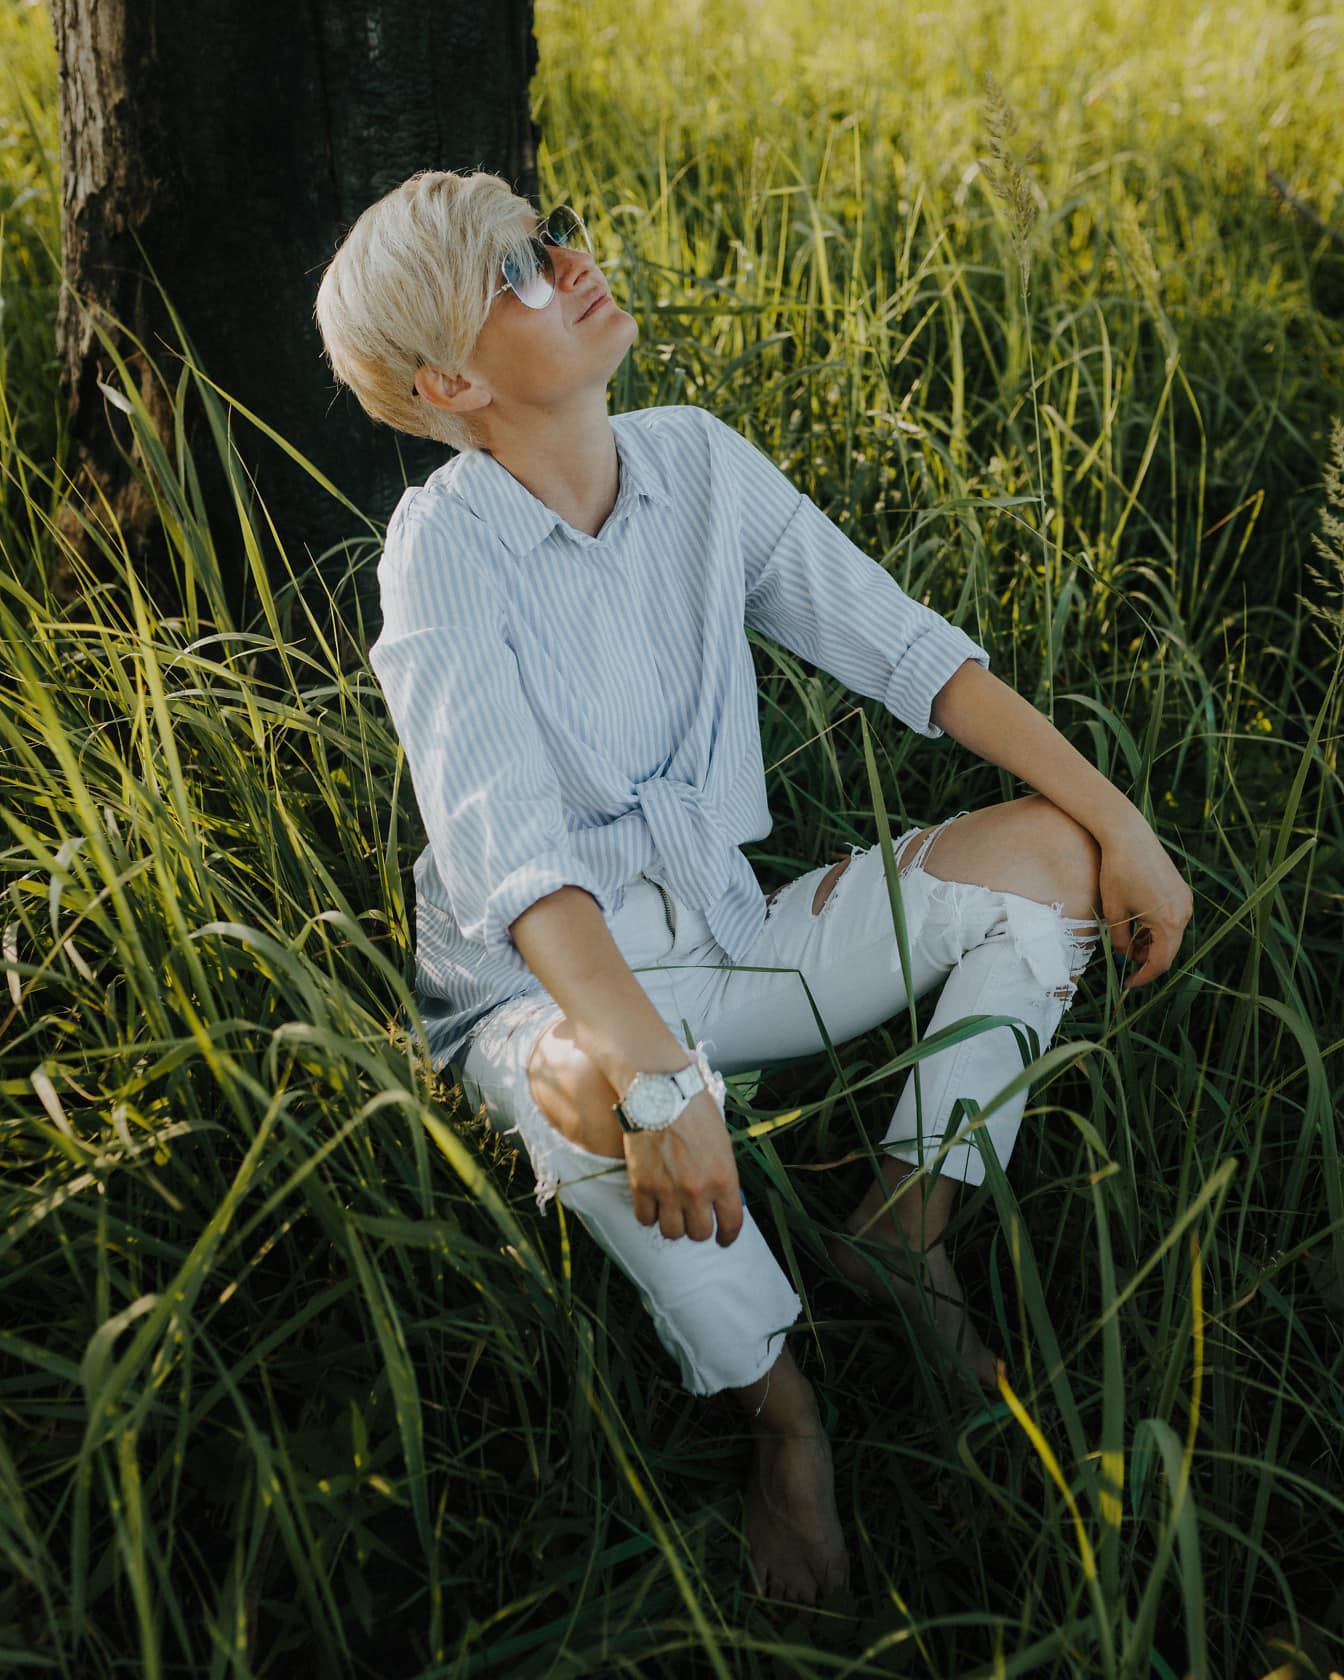 Krátke vlasy blond so slnečnými glaglasami sediacimi v tráve